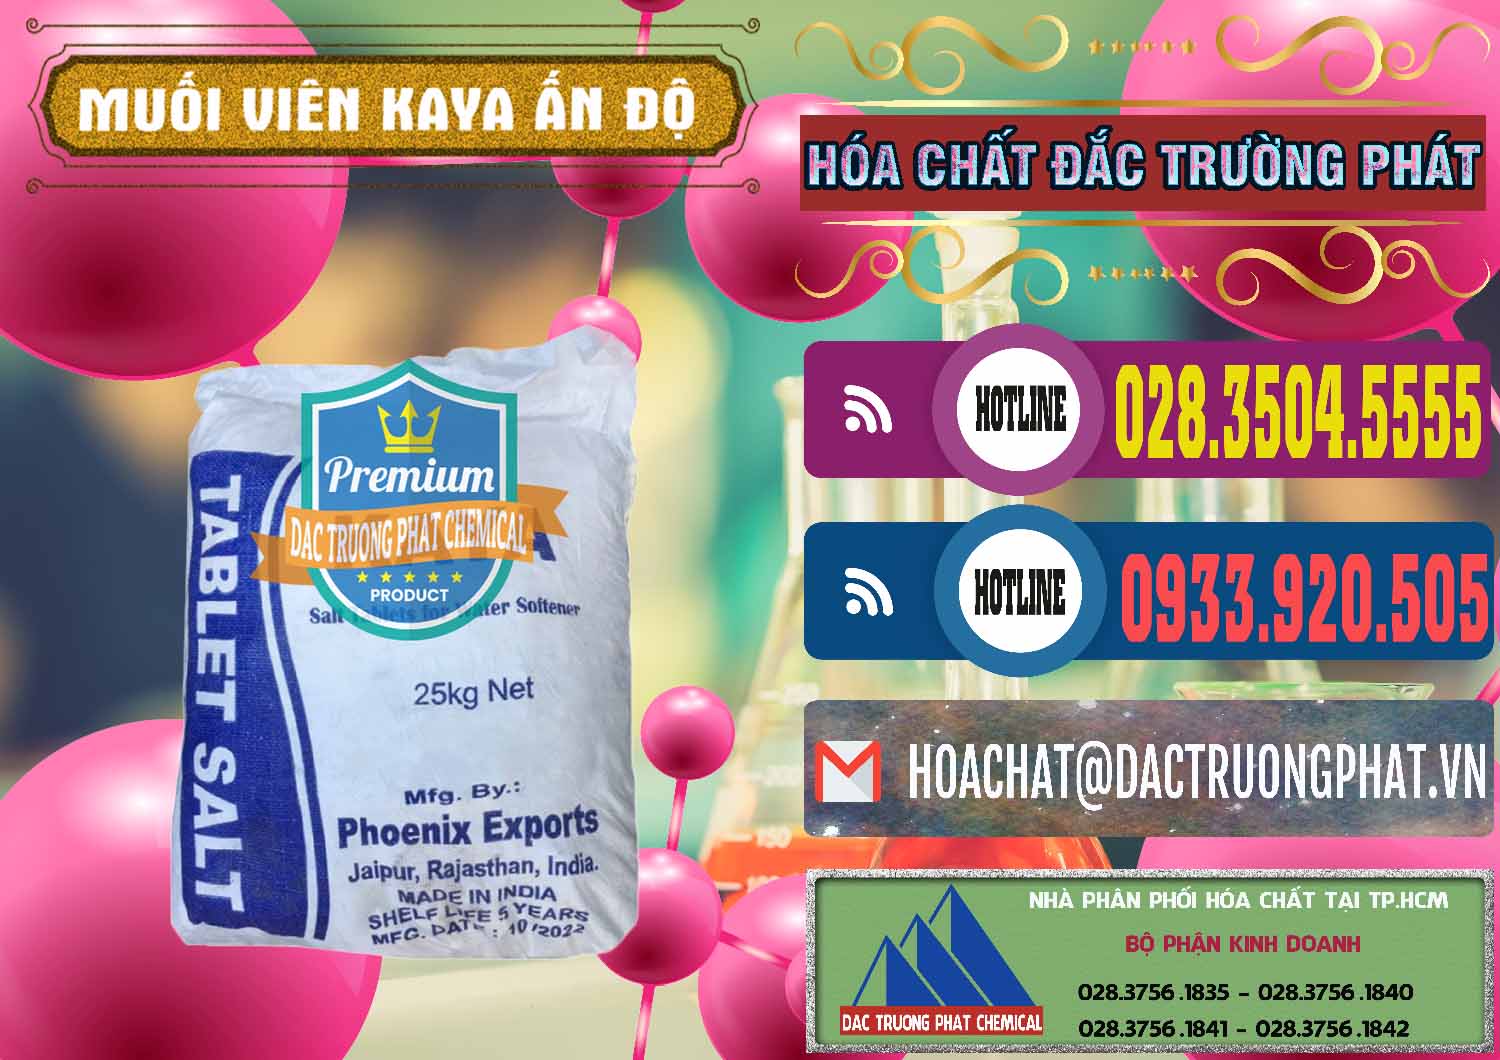 Cty chuyên kinh doanh ( bán ) Muối NaCL – Sodium Chloride Dạng Viên Tablets Kaya Ấn Độ India - 0368 - Nơi cung cấp và phân phối hóa chất tại TP.HCM - muabanhoachat.com.vn